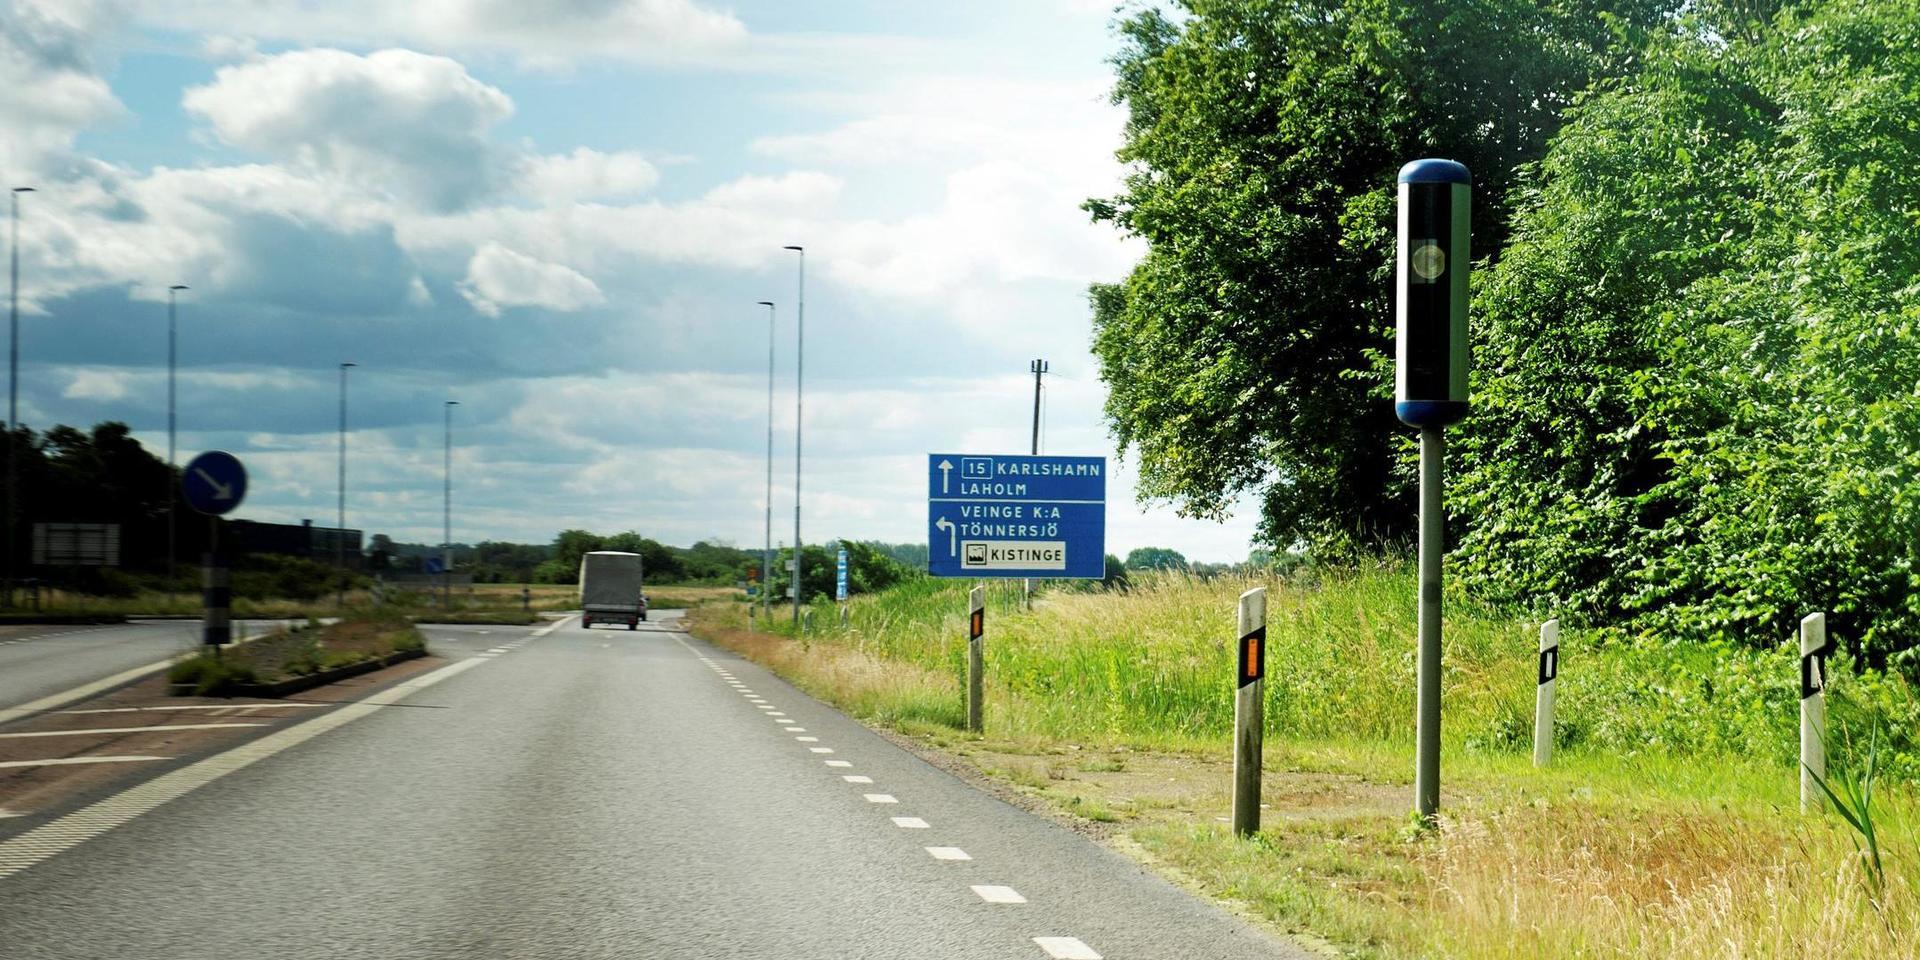 Fortkörare får böter vid polisens och Trafikverkets fartkameror i ATK-systemet på väg 15 vid Fyllinge och Trönninge utanför Halmstads tätort på vägen mot Laholm.